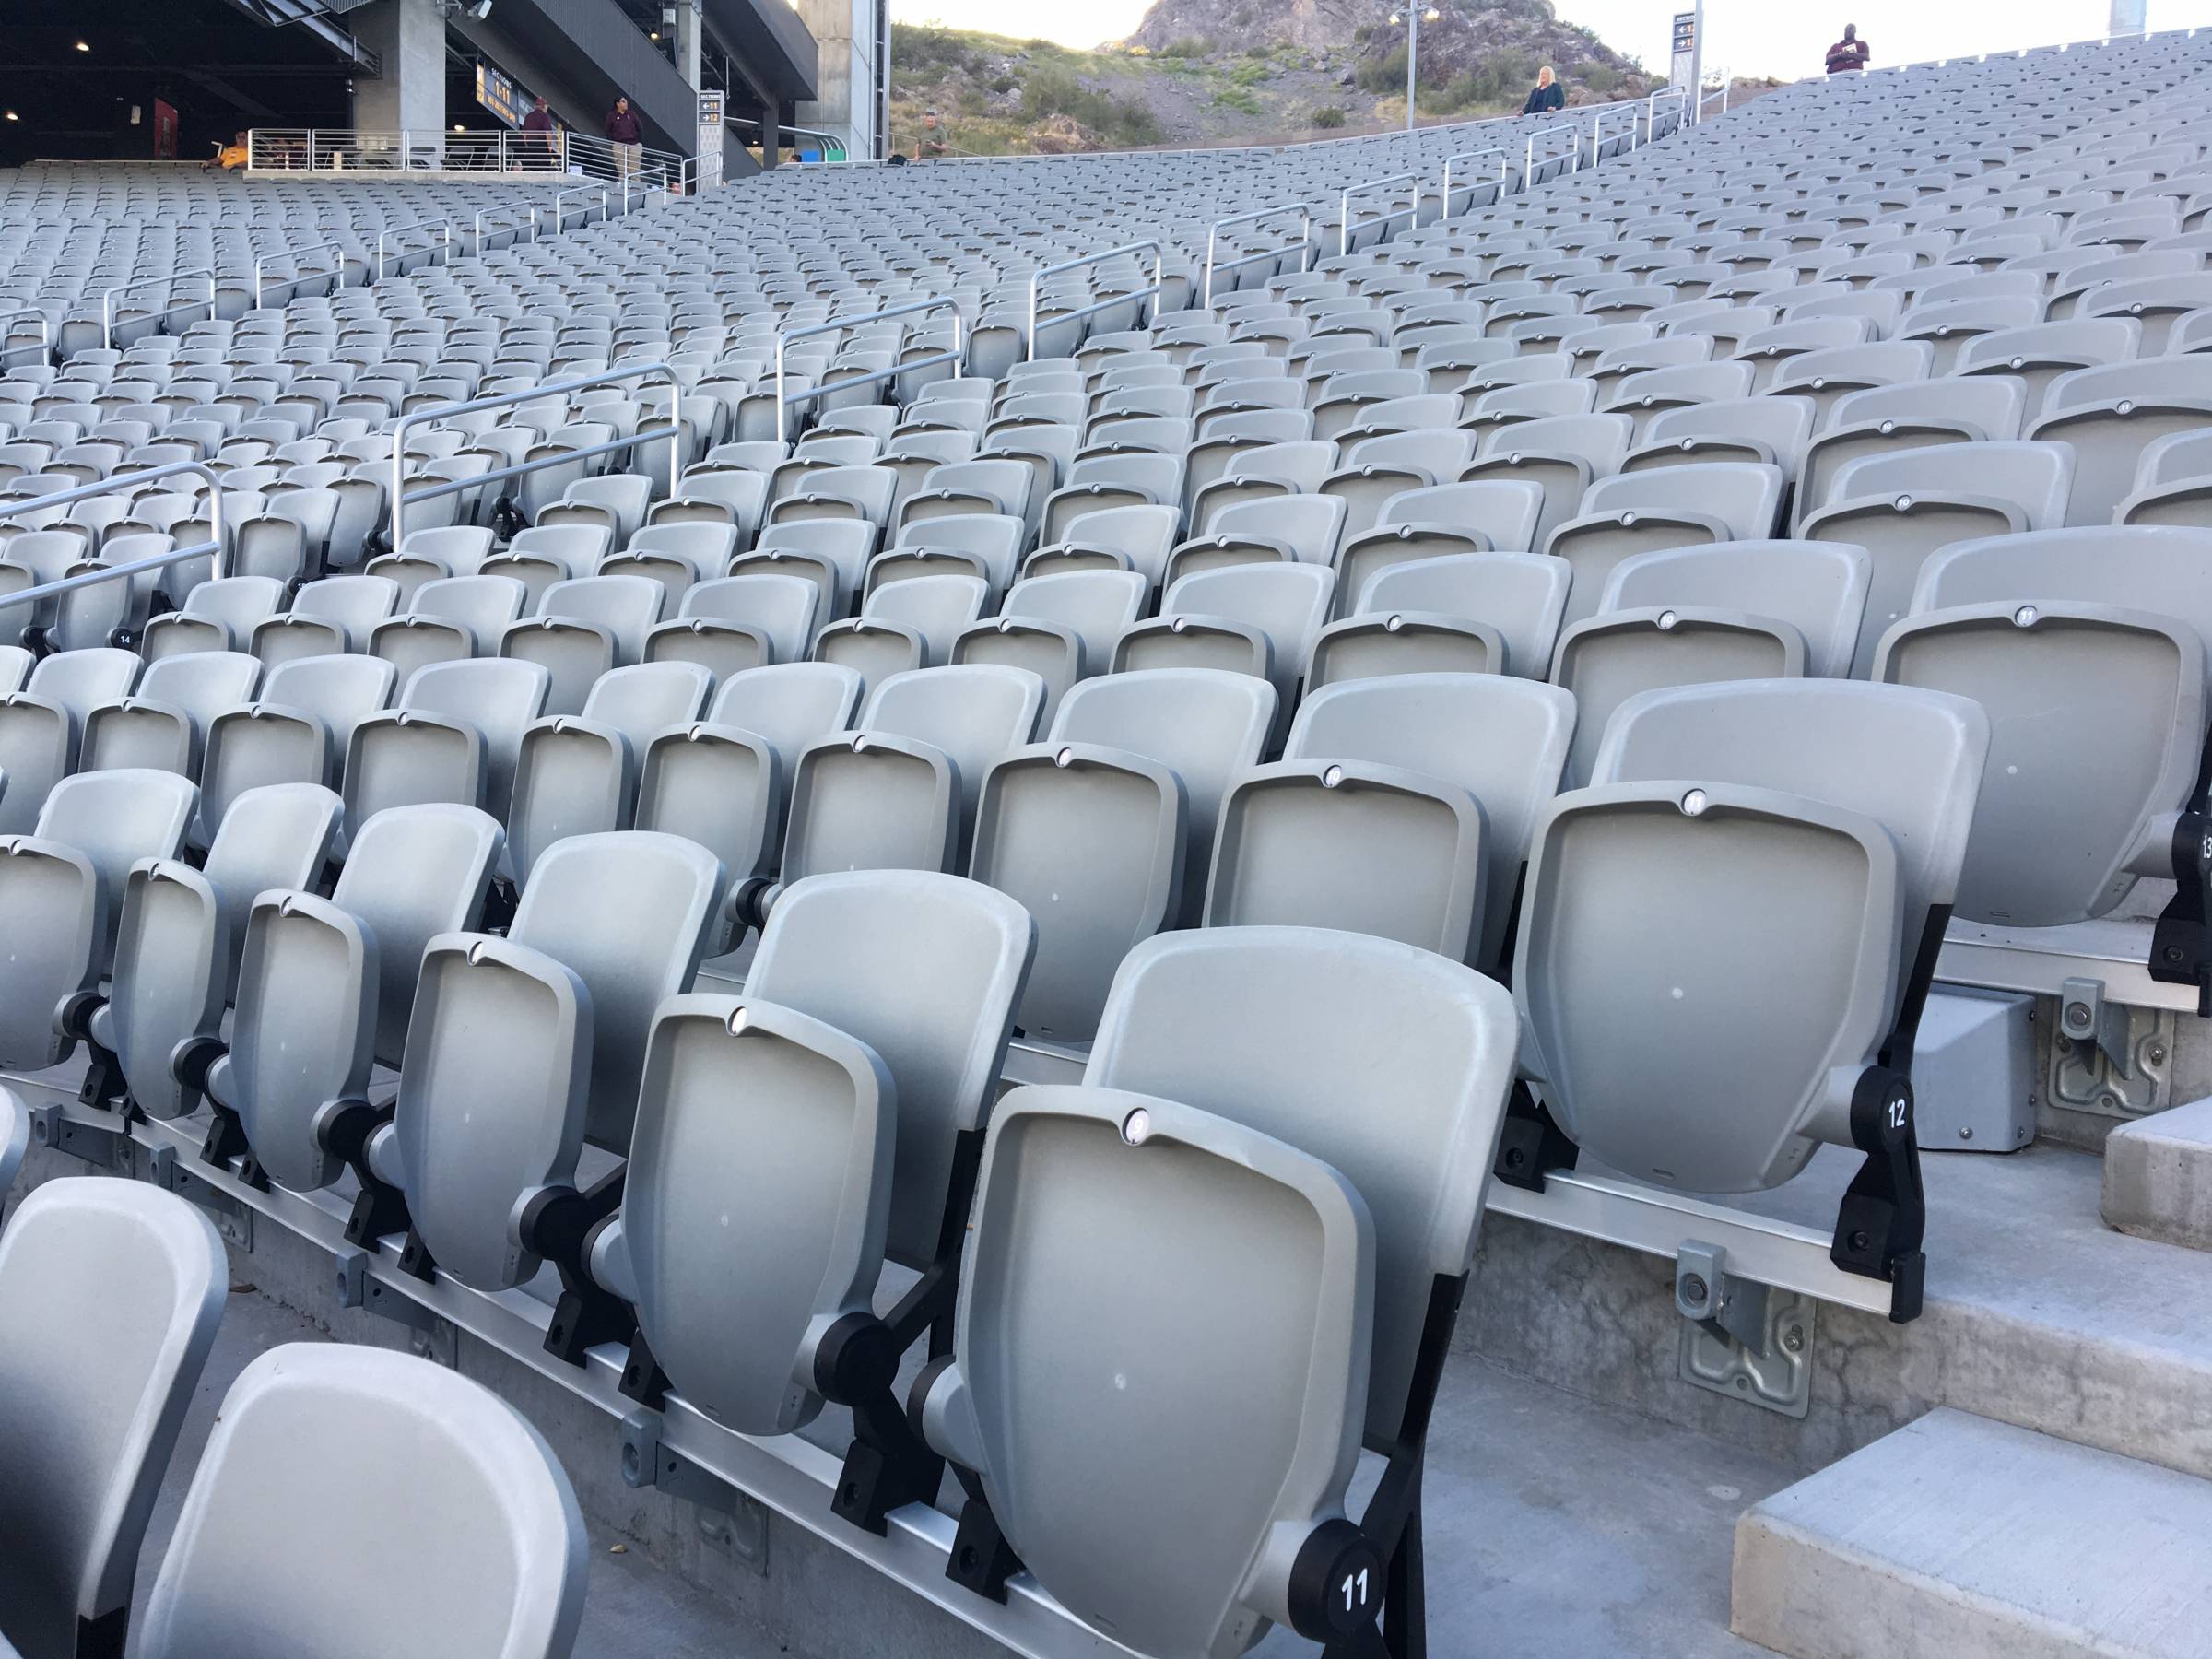 Chairback Seats at Sun Devil Stadium